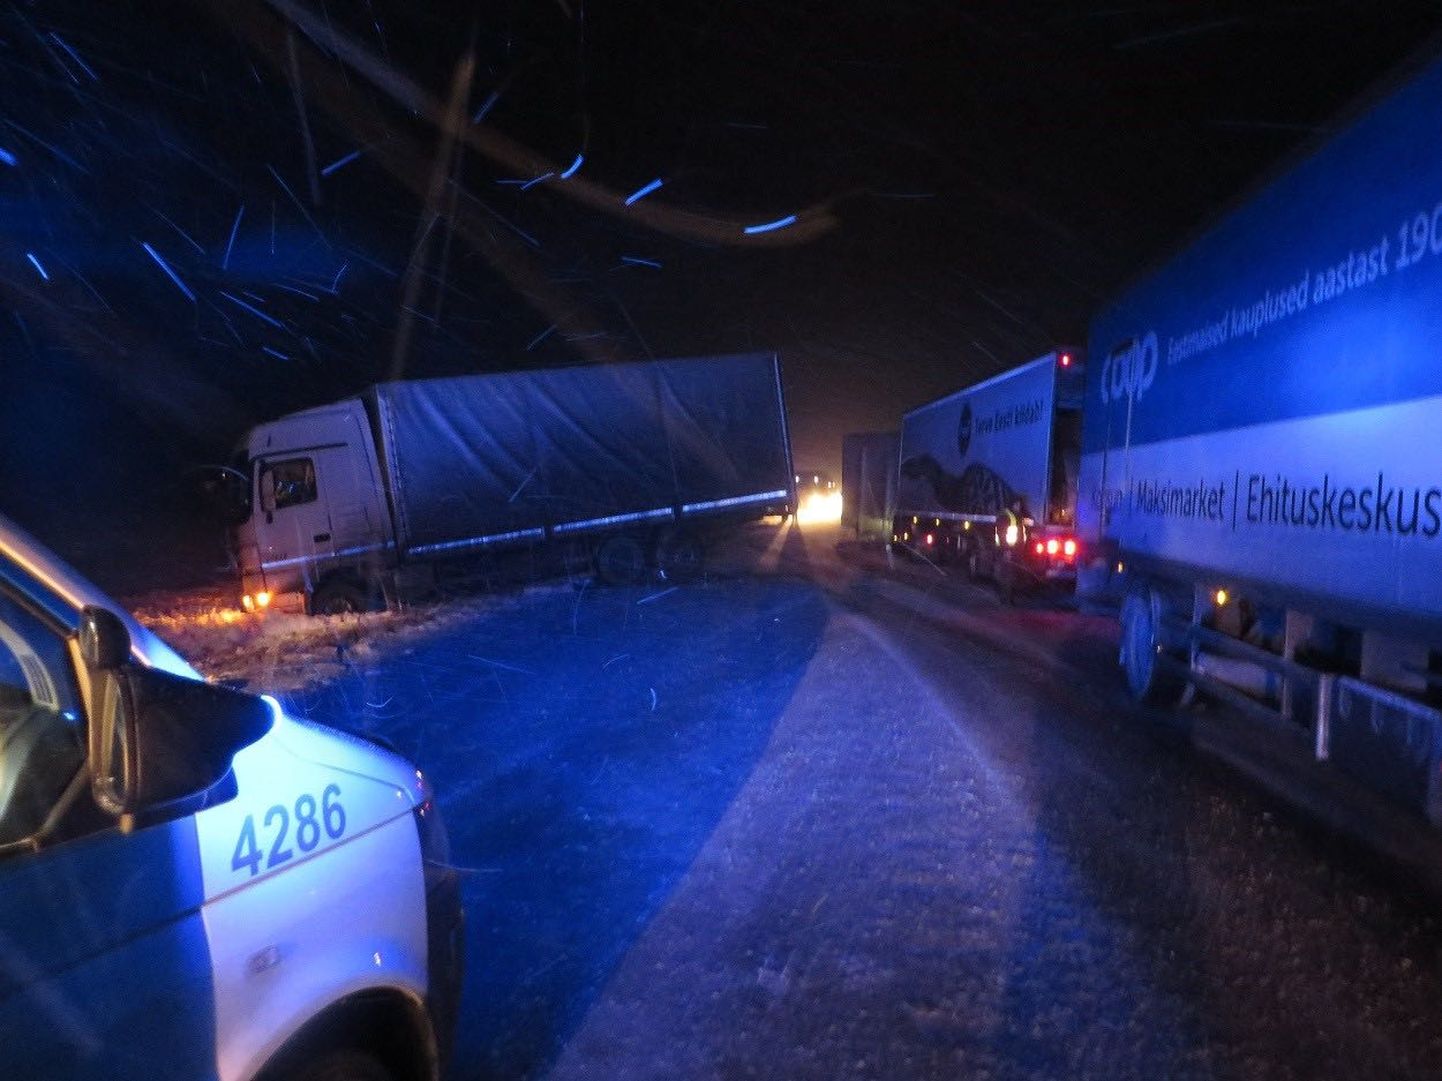 Liiklusõnnetus Tallinna-Narva maanteel